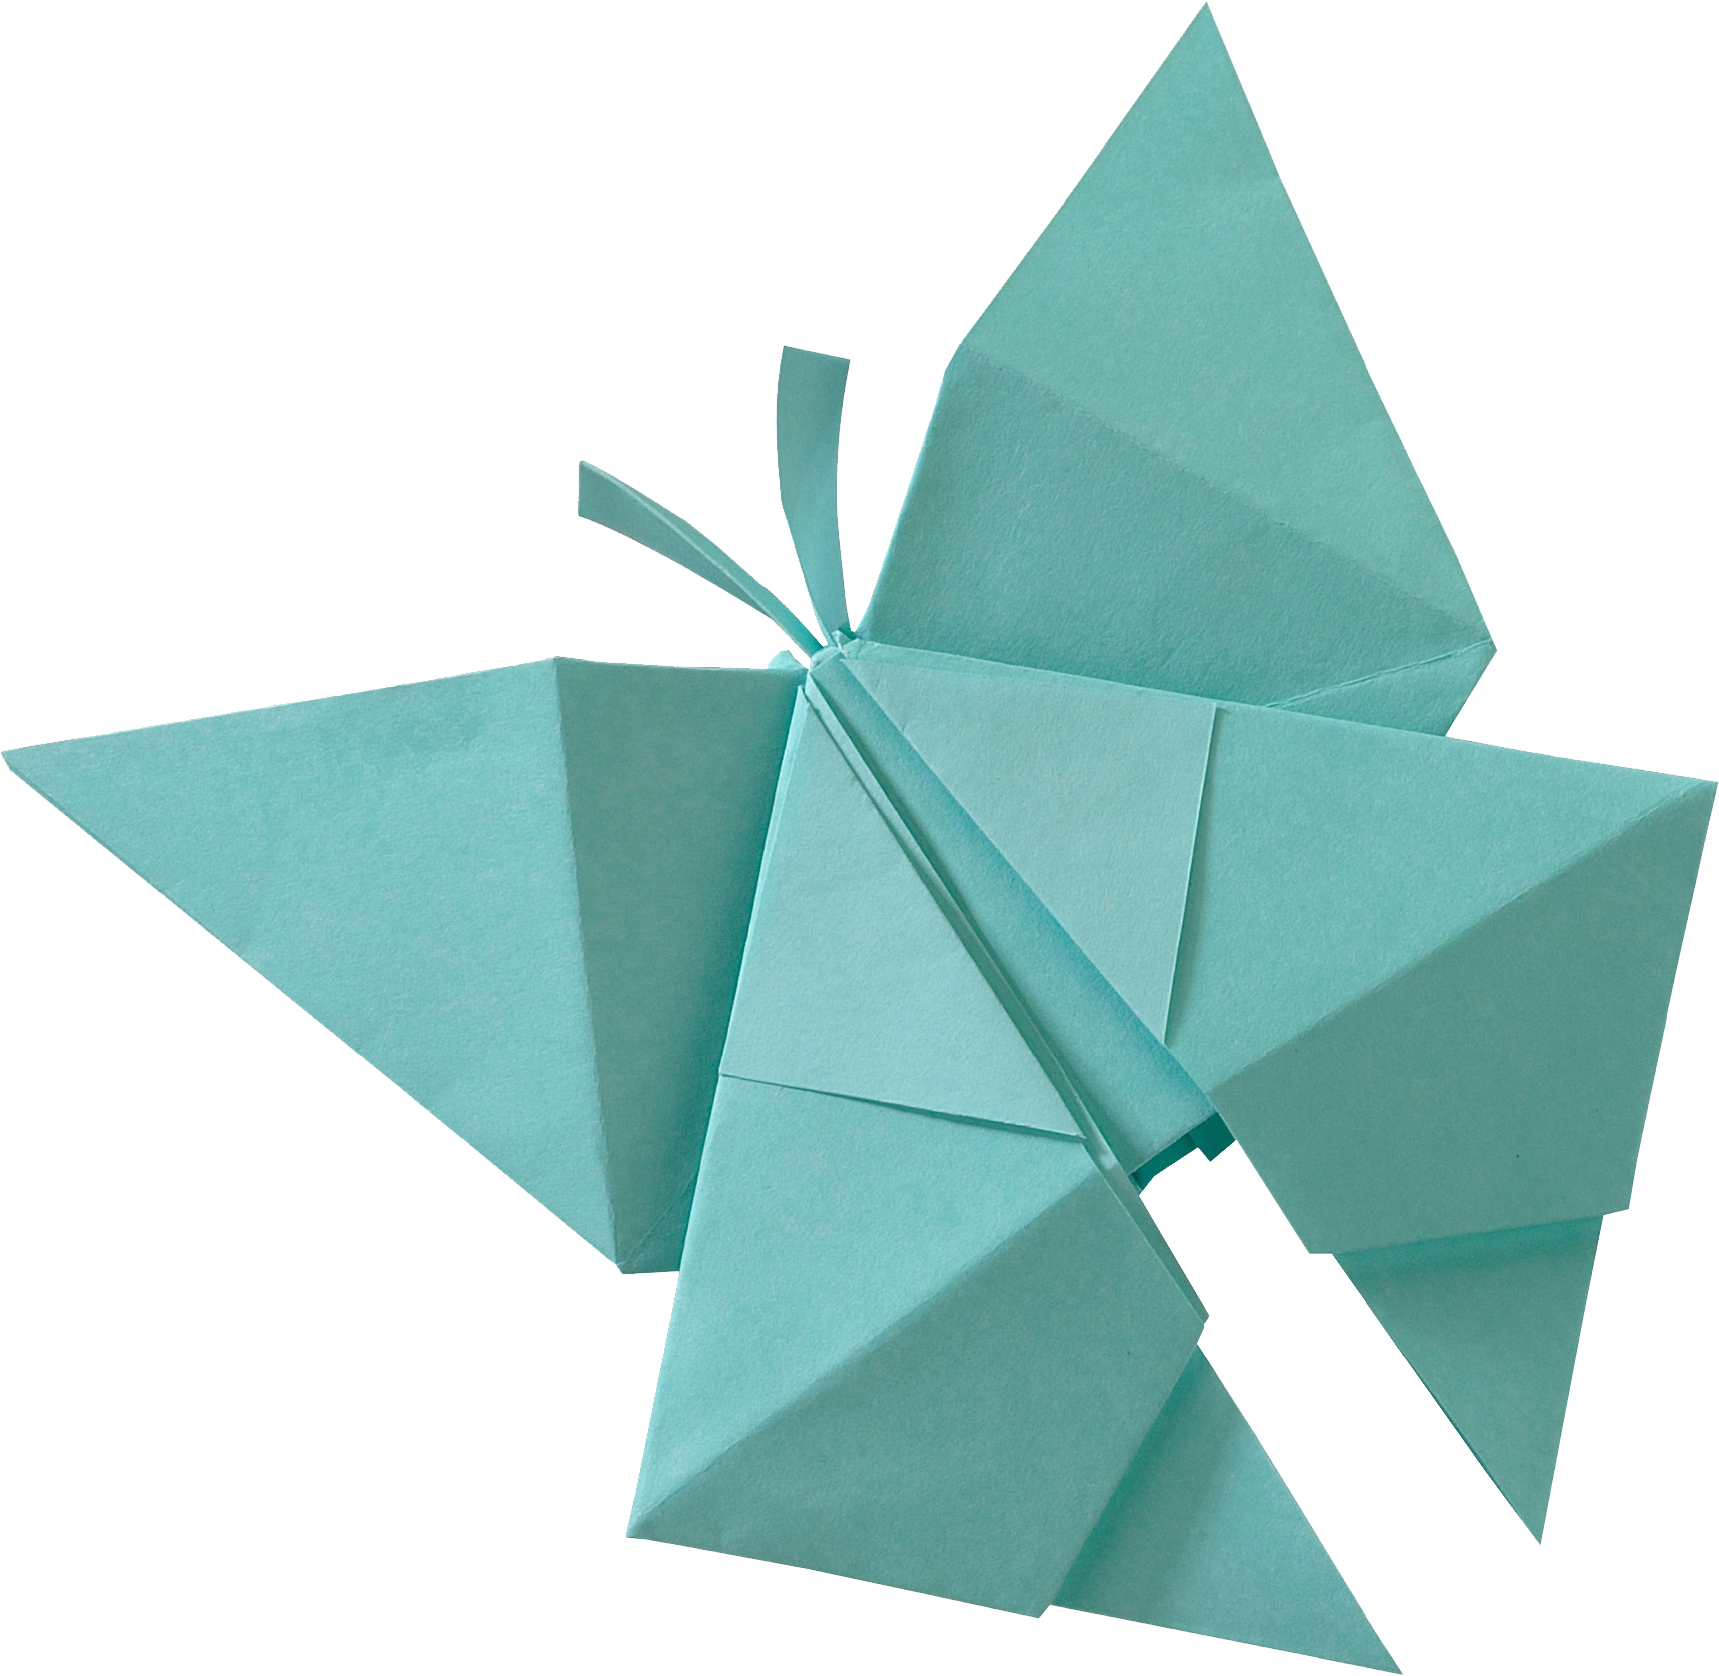 Guava Single Color Premium Origami Paper – Paper Tree - The